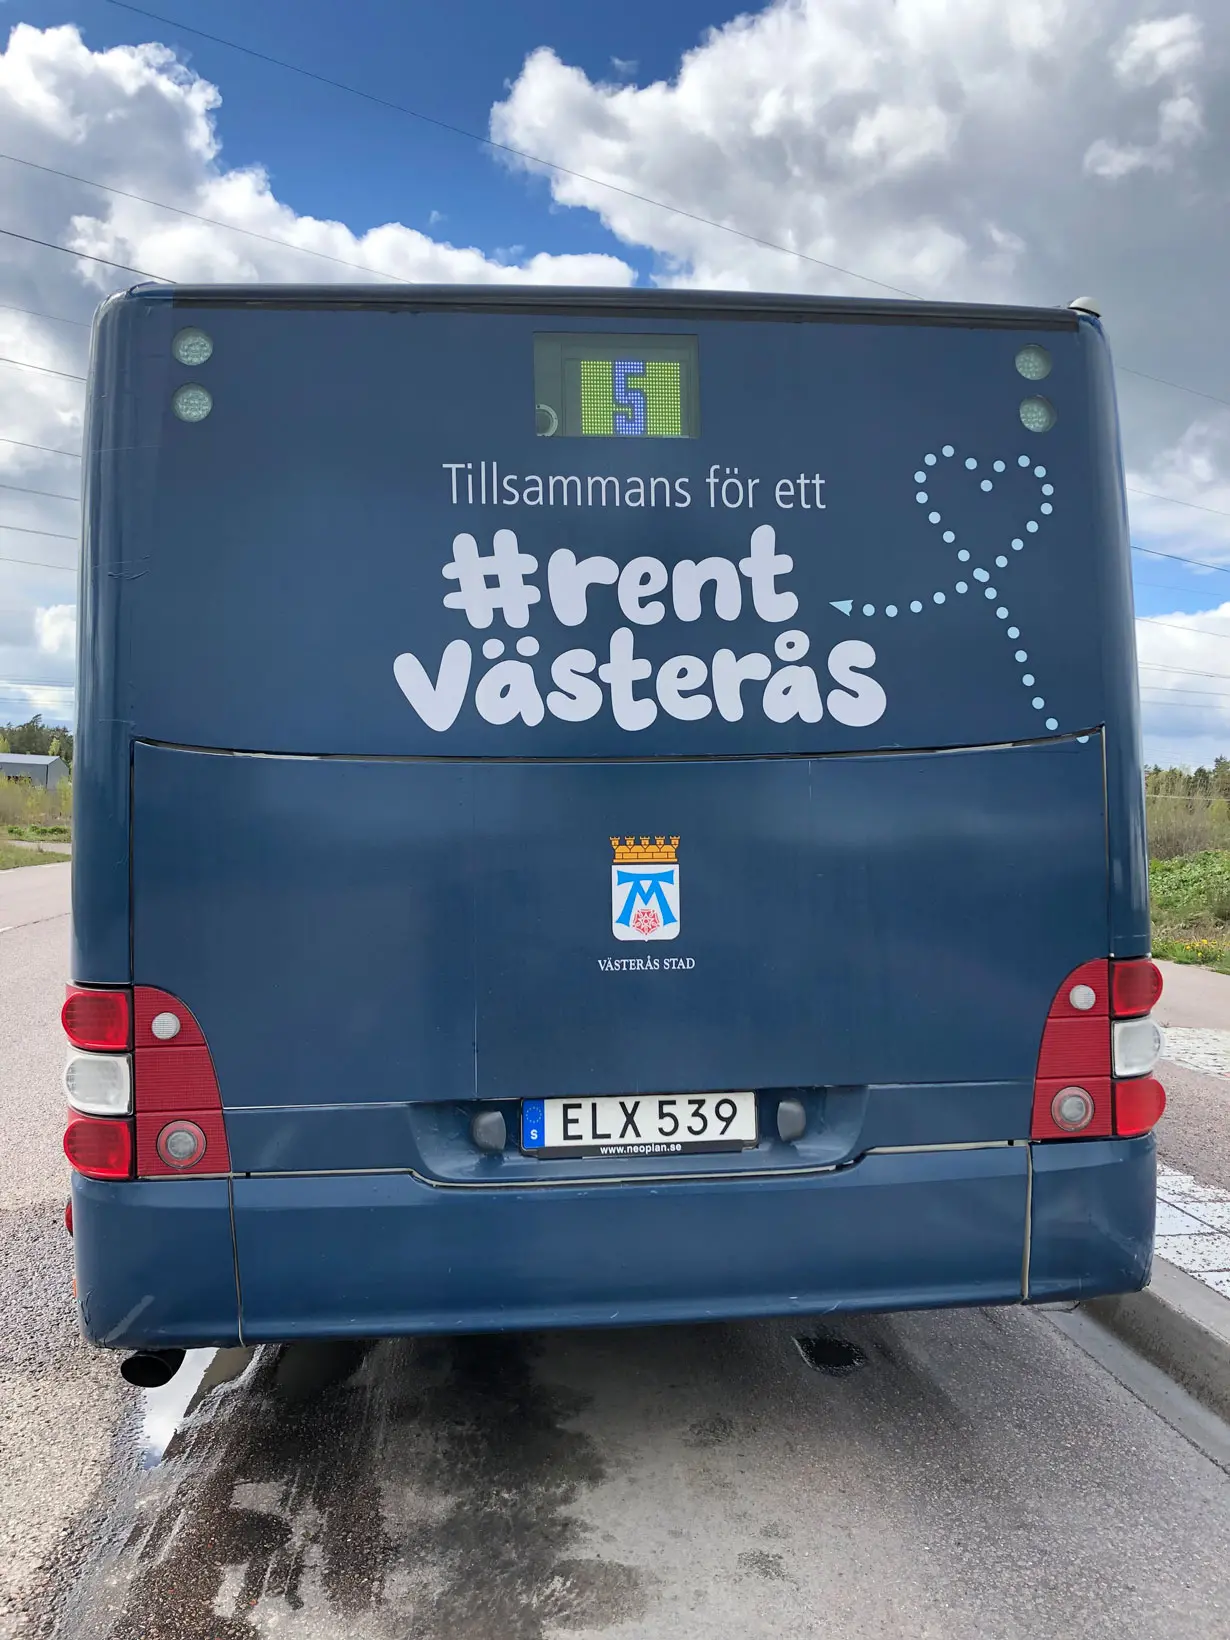 Rent Västerås - reklam på baksida av en buss. 